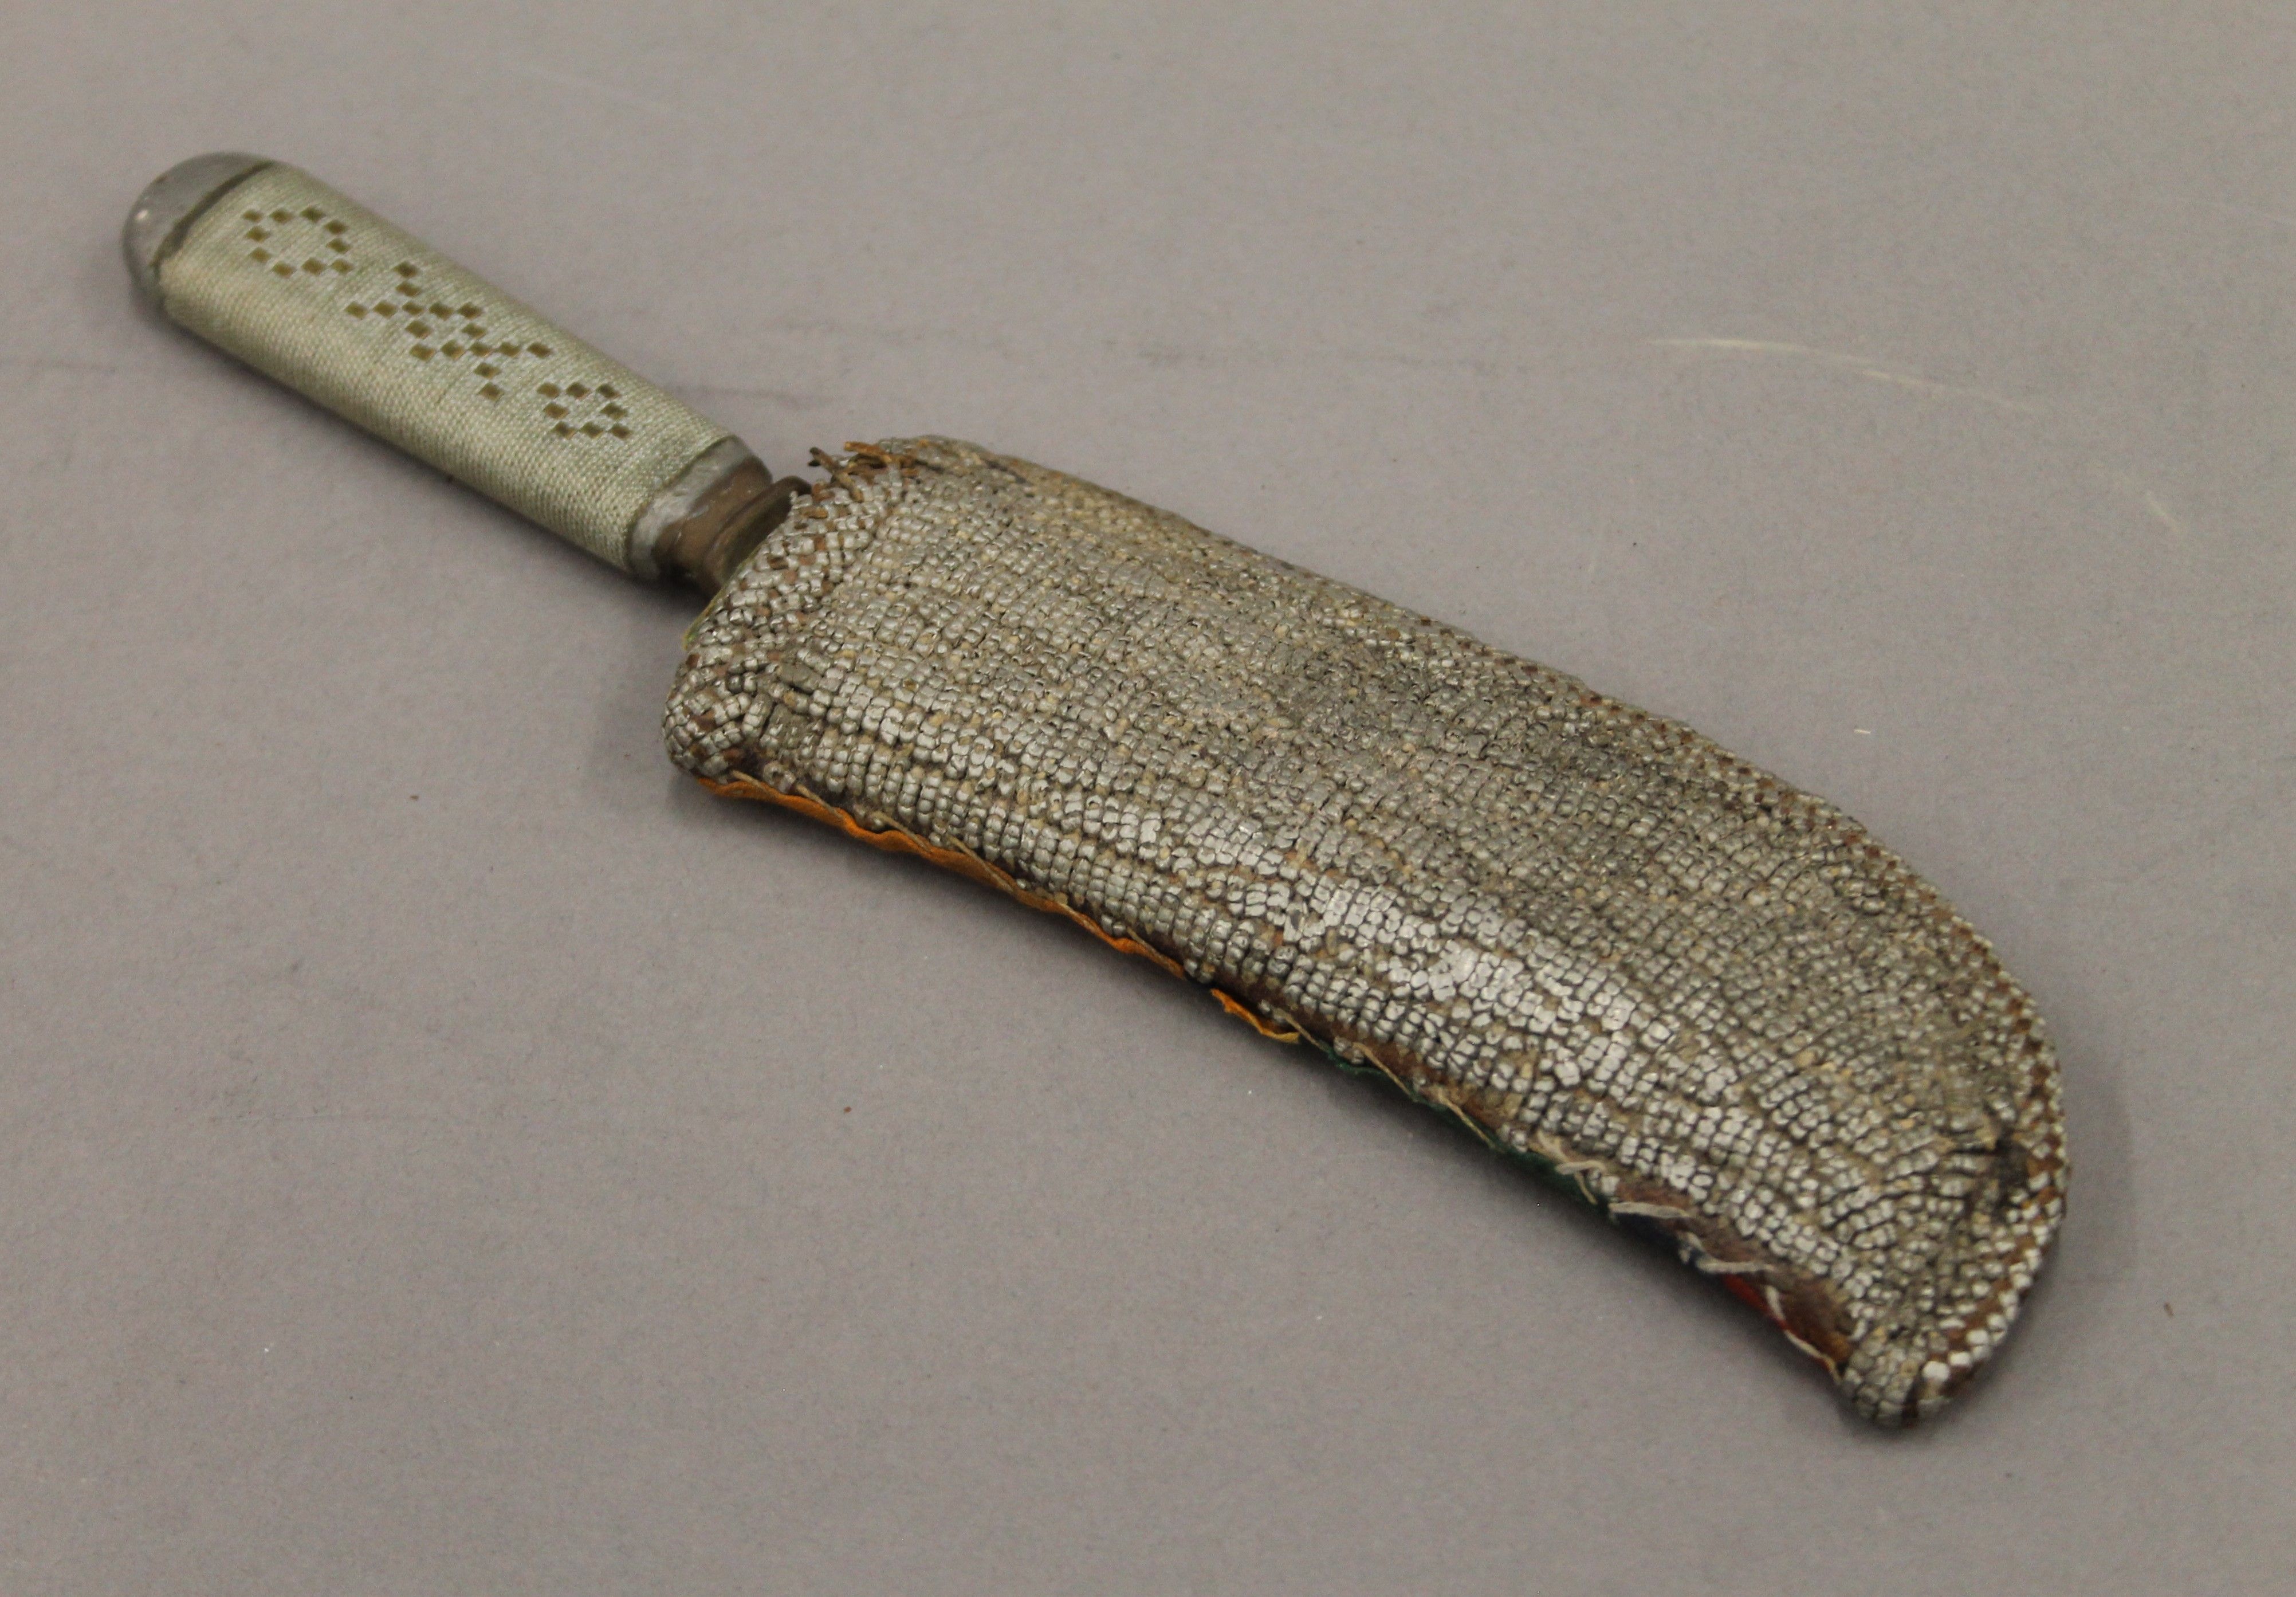 A Solingen dagger in sheath. 24 cm long.